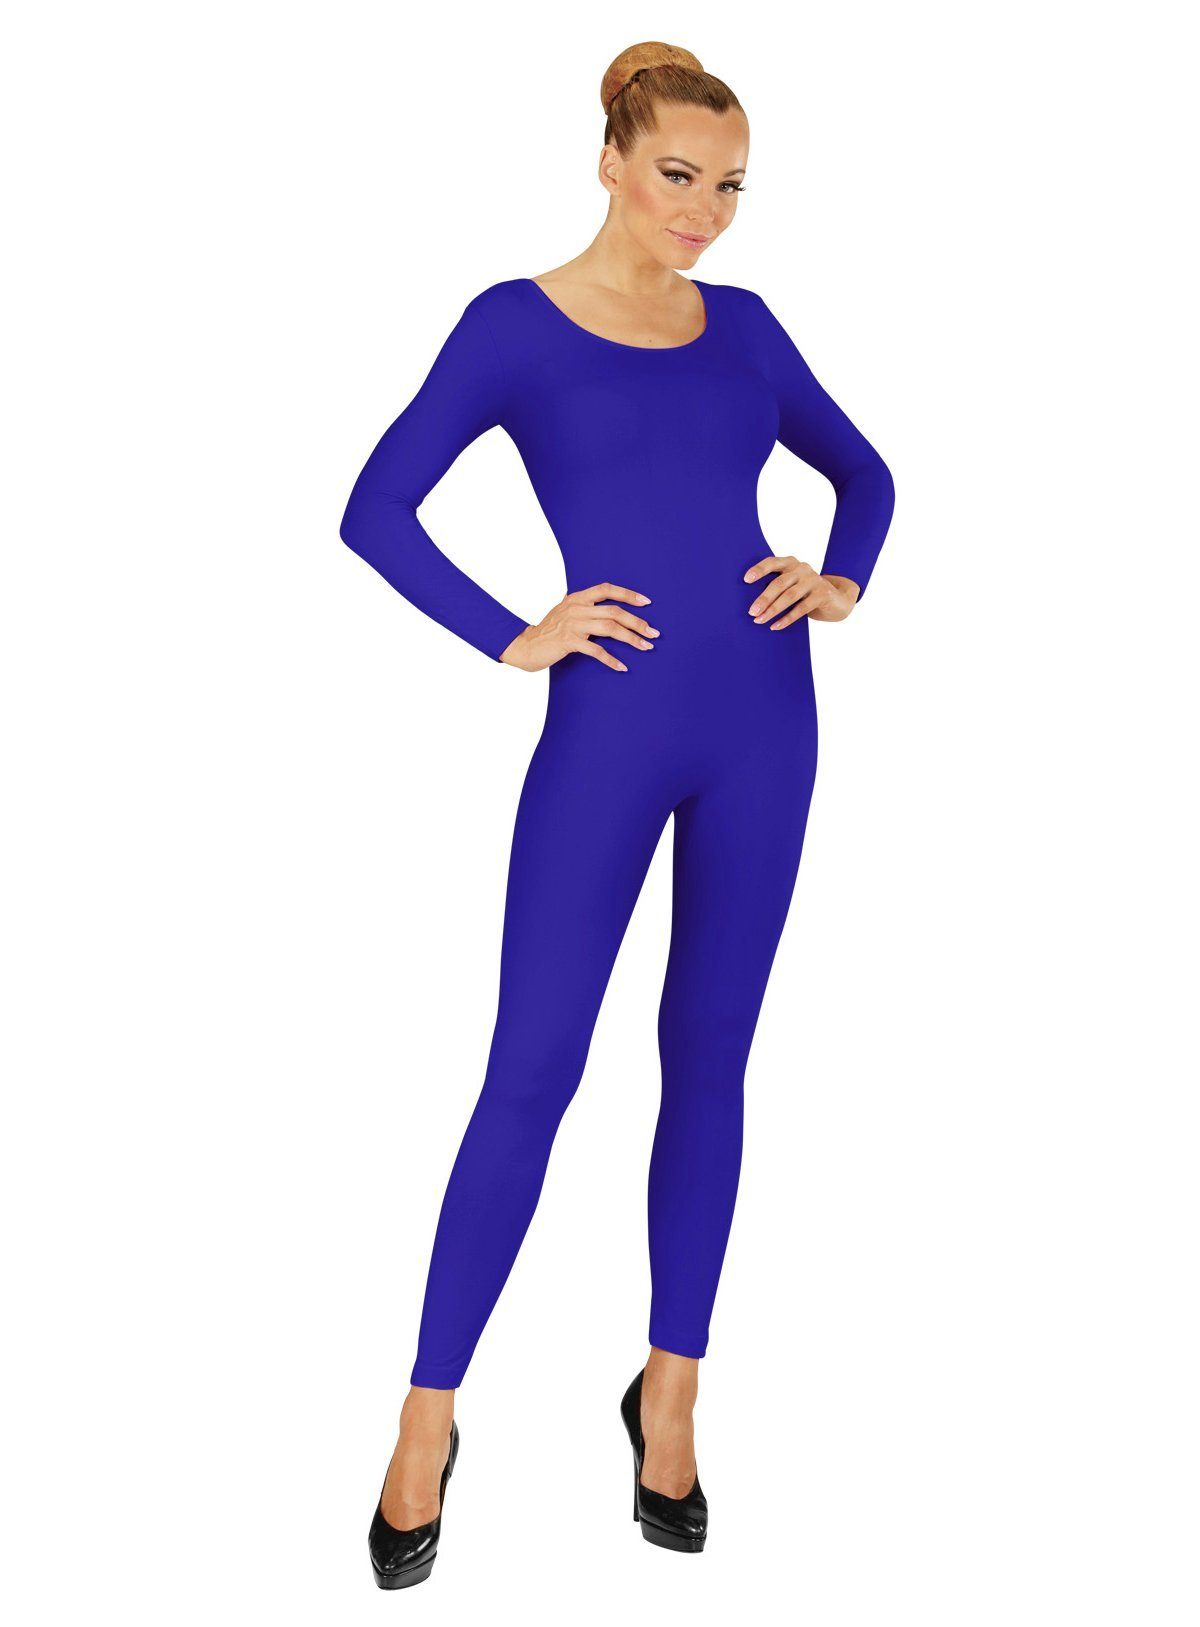 Widdmann Kostüm Langer Body blau, Einfarbige Basics zum individuellen Kombinieren